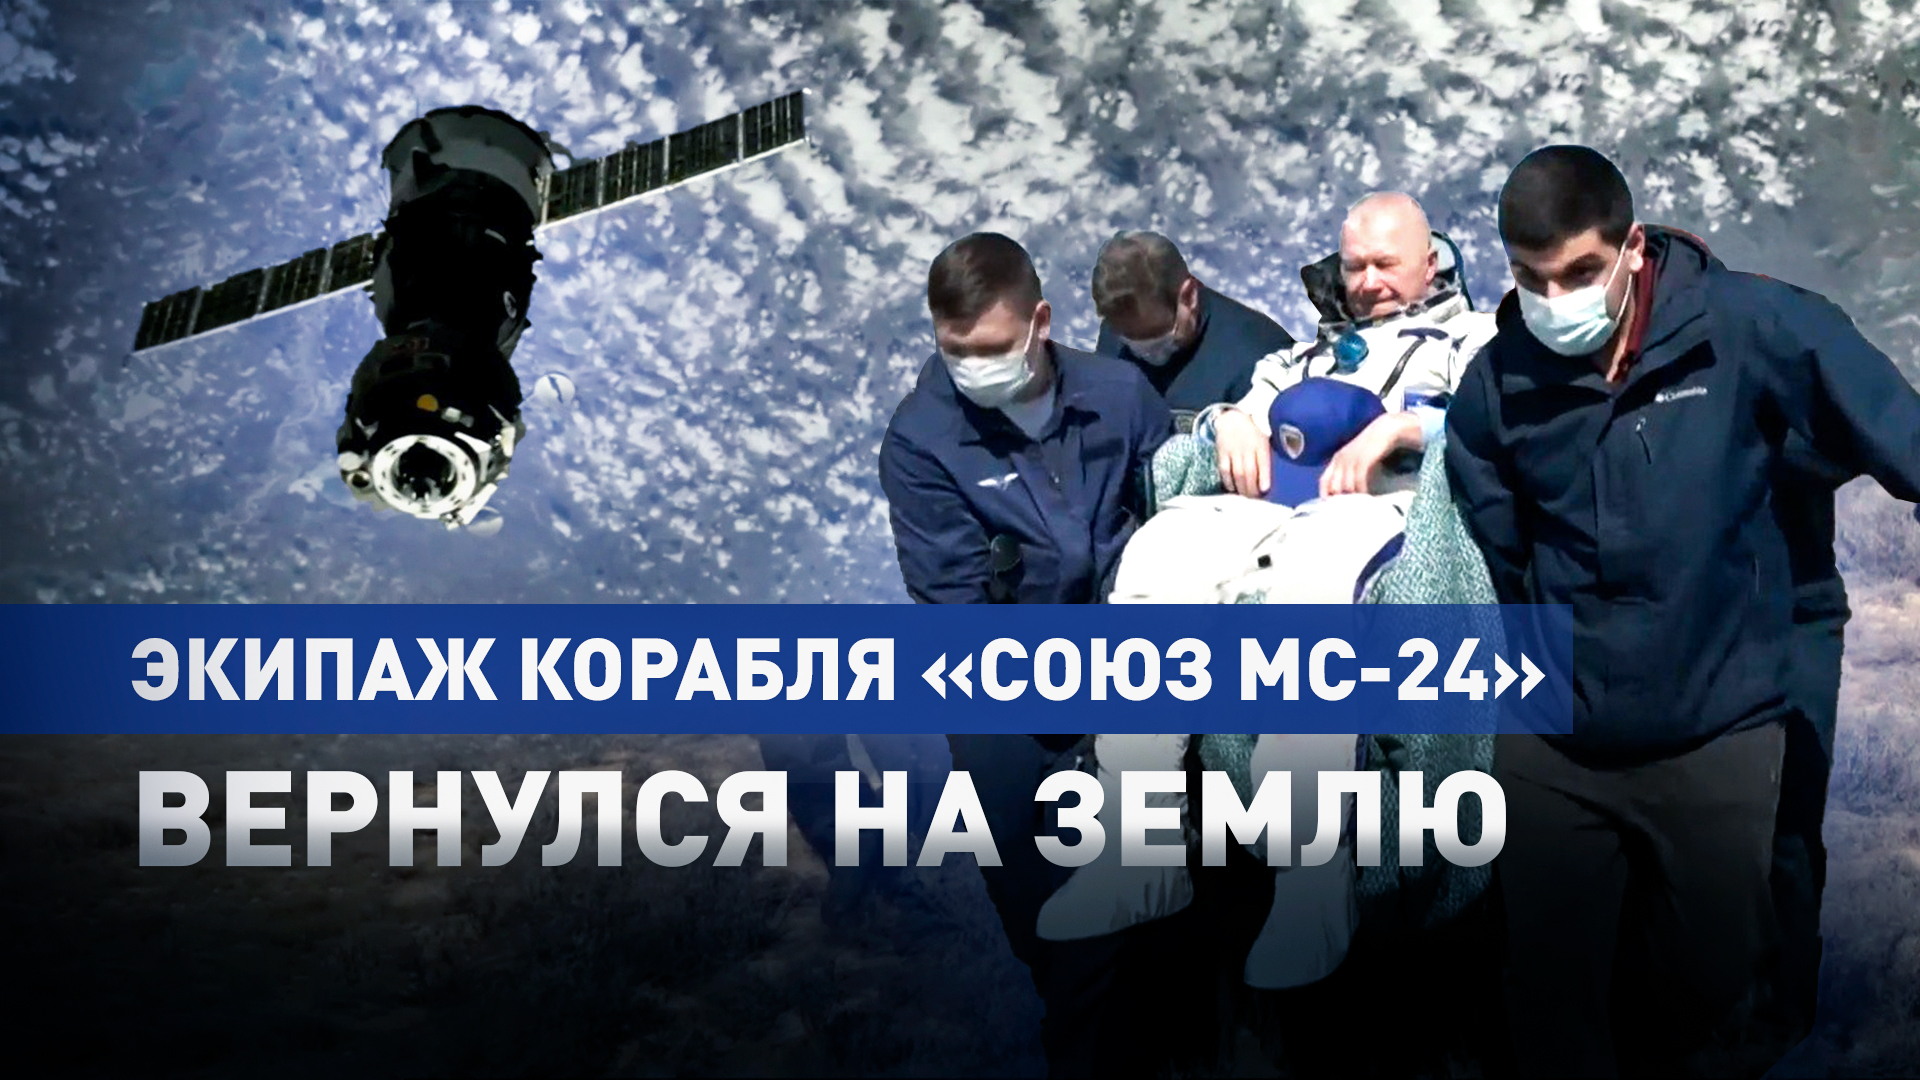 Международный экипаж корабля «Союз МС-24» вернулся на Землю с МКС